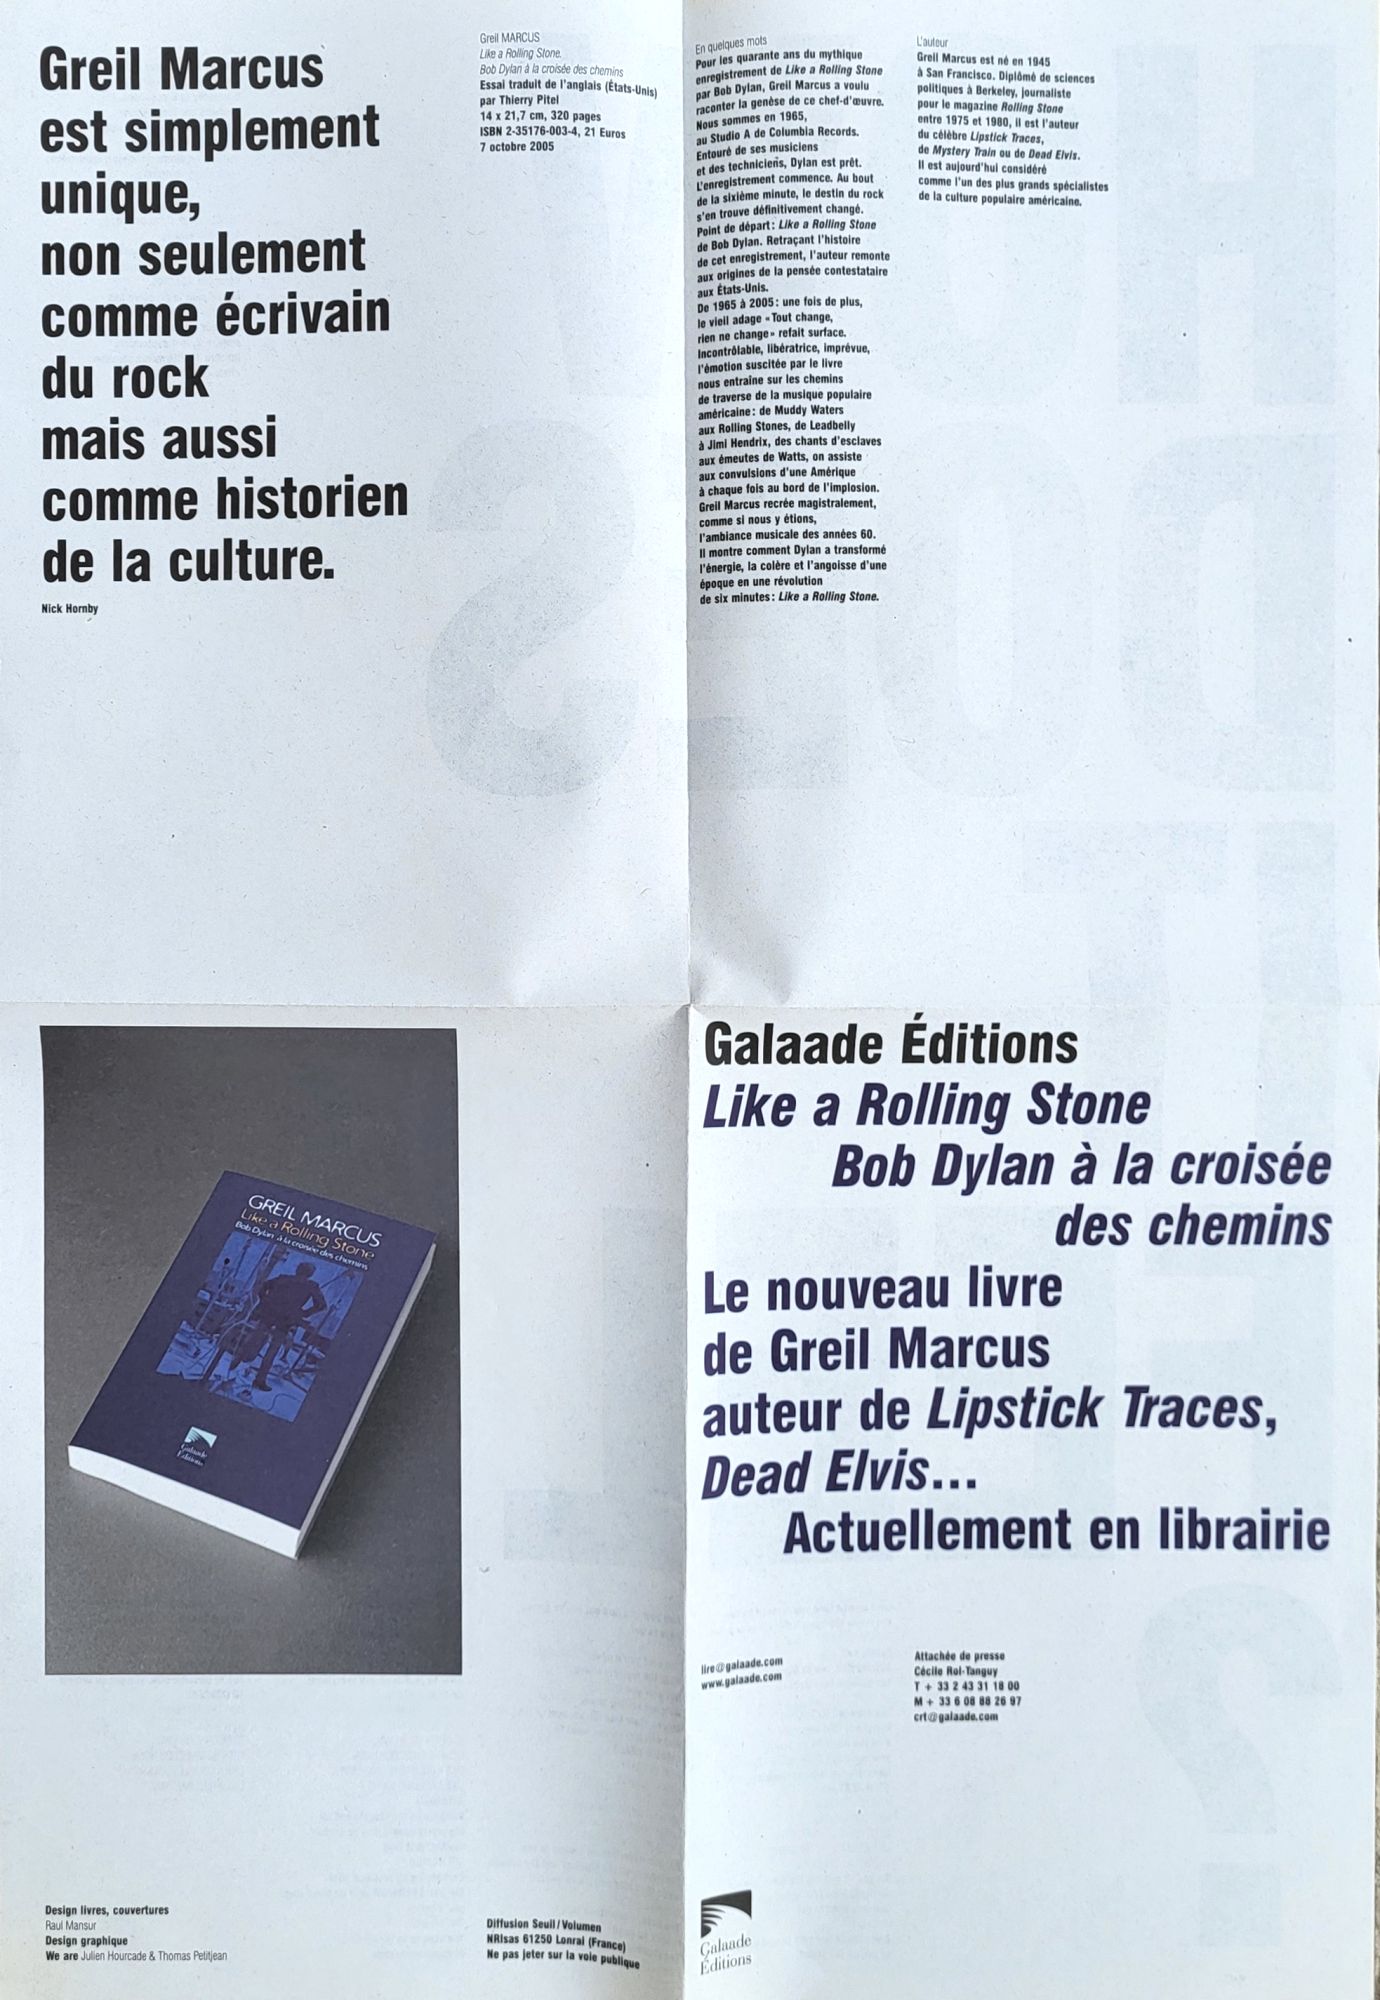 bob dylan à la croisée des chemins marcus book in French 2005